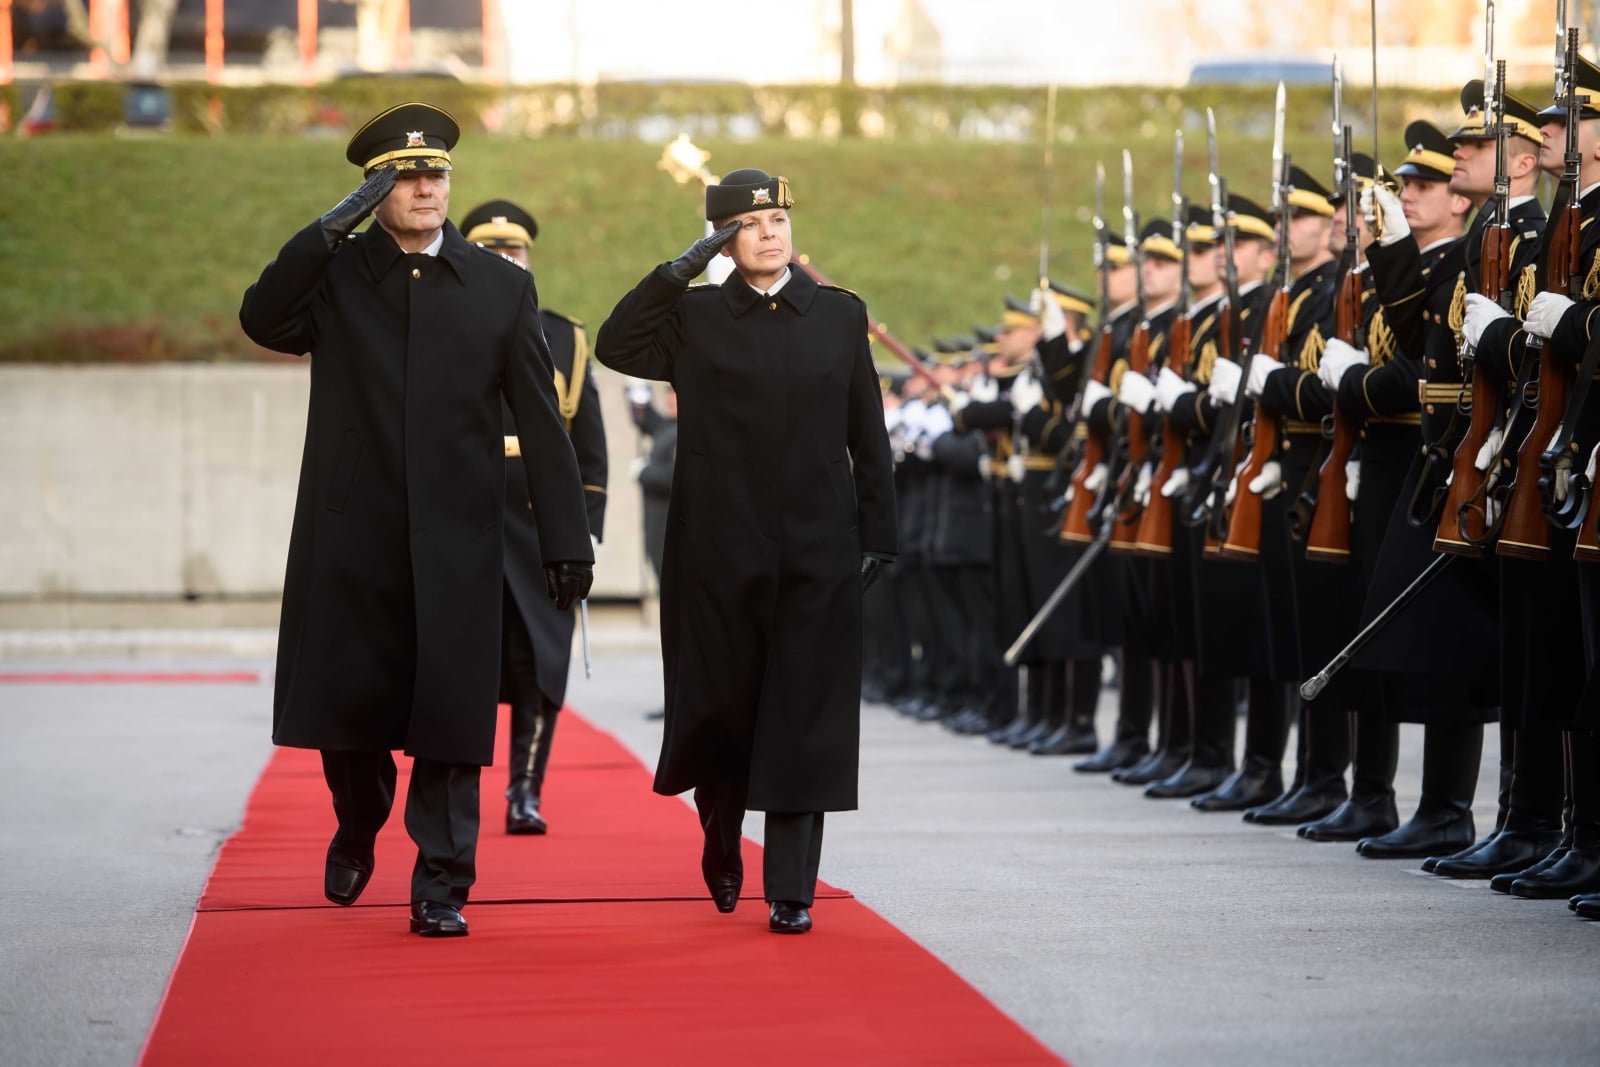 Generał dywizji Alenka Ermenc salutuje podczas przejmowania obowiązków szefa Sztabu Generalnego Słoweńskich Sił Zbrojnych w Lublanie, Słowenia